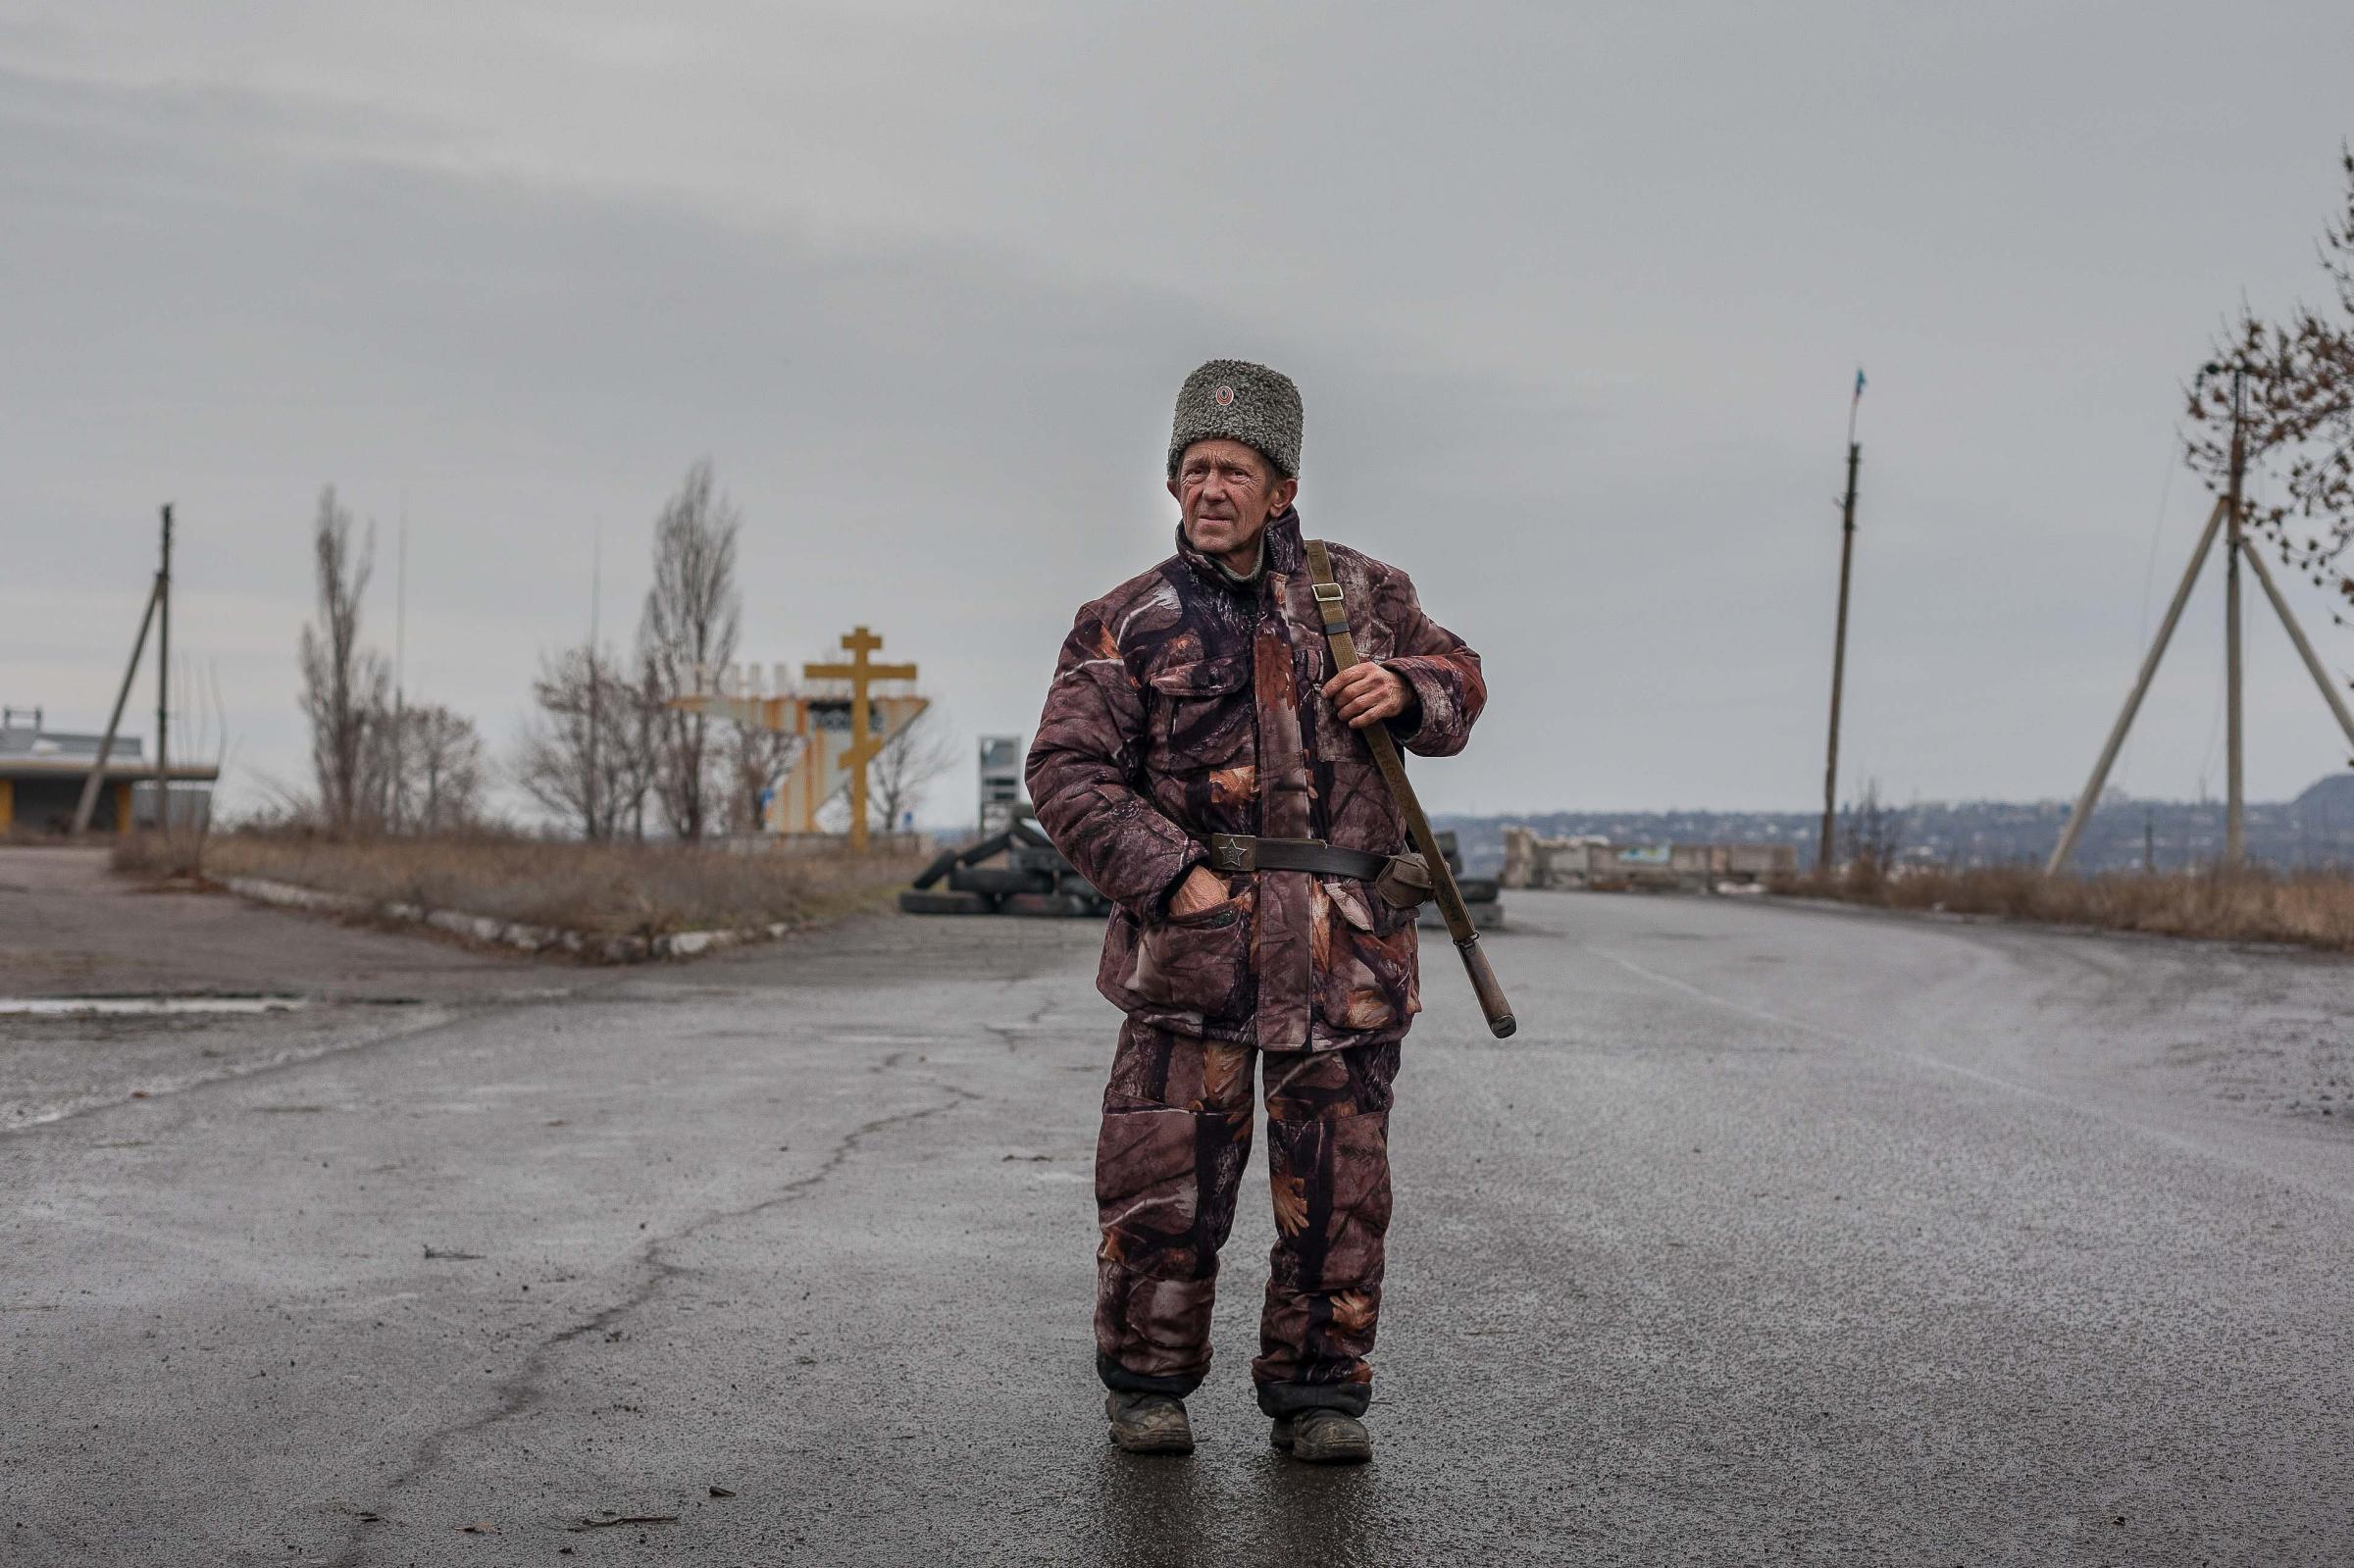 Truce in the Donbas -   December 2014. Lugansk, Ukraine. An elderly Cossack...